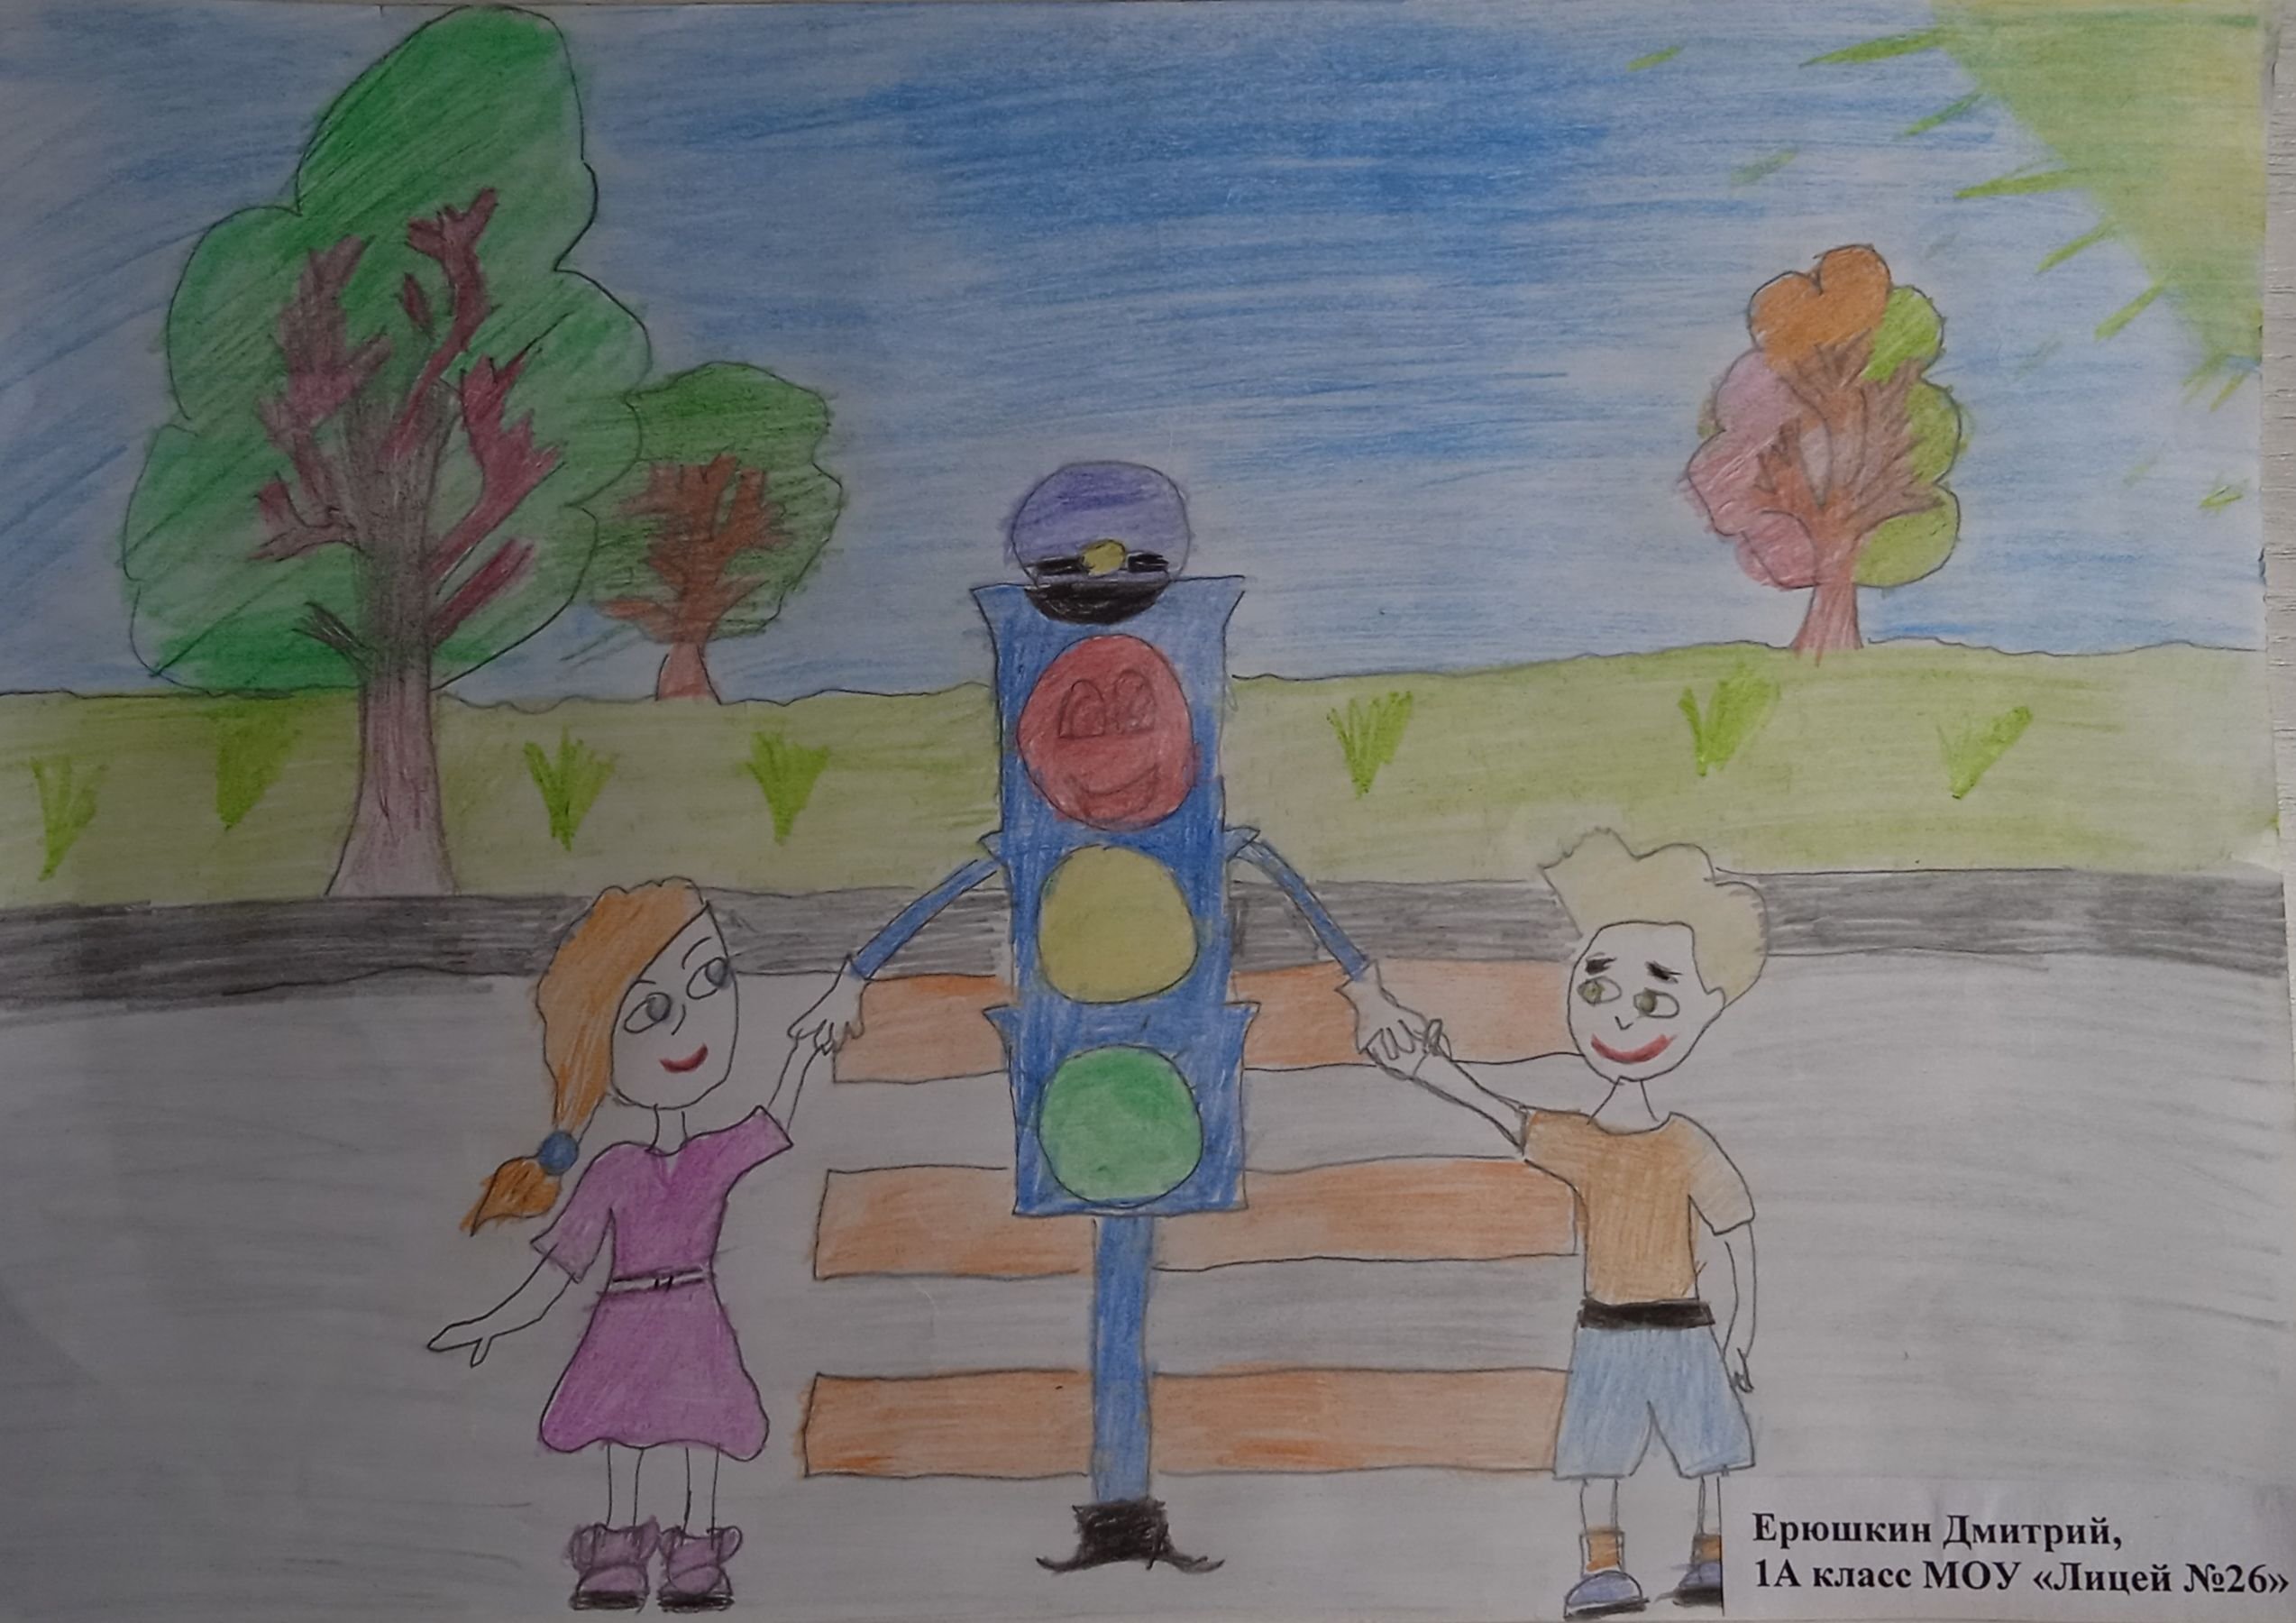 Планета безопасного детства рисунок на тему дорожного движения